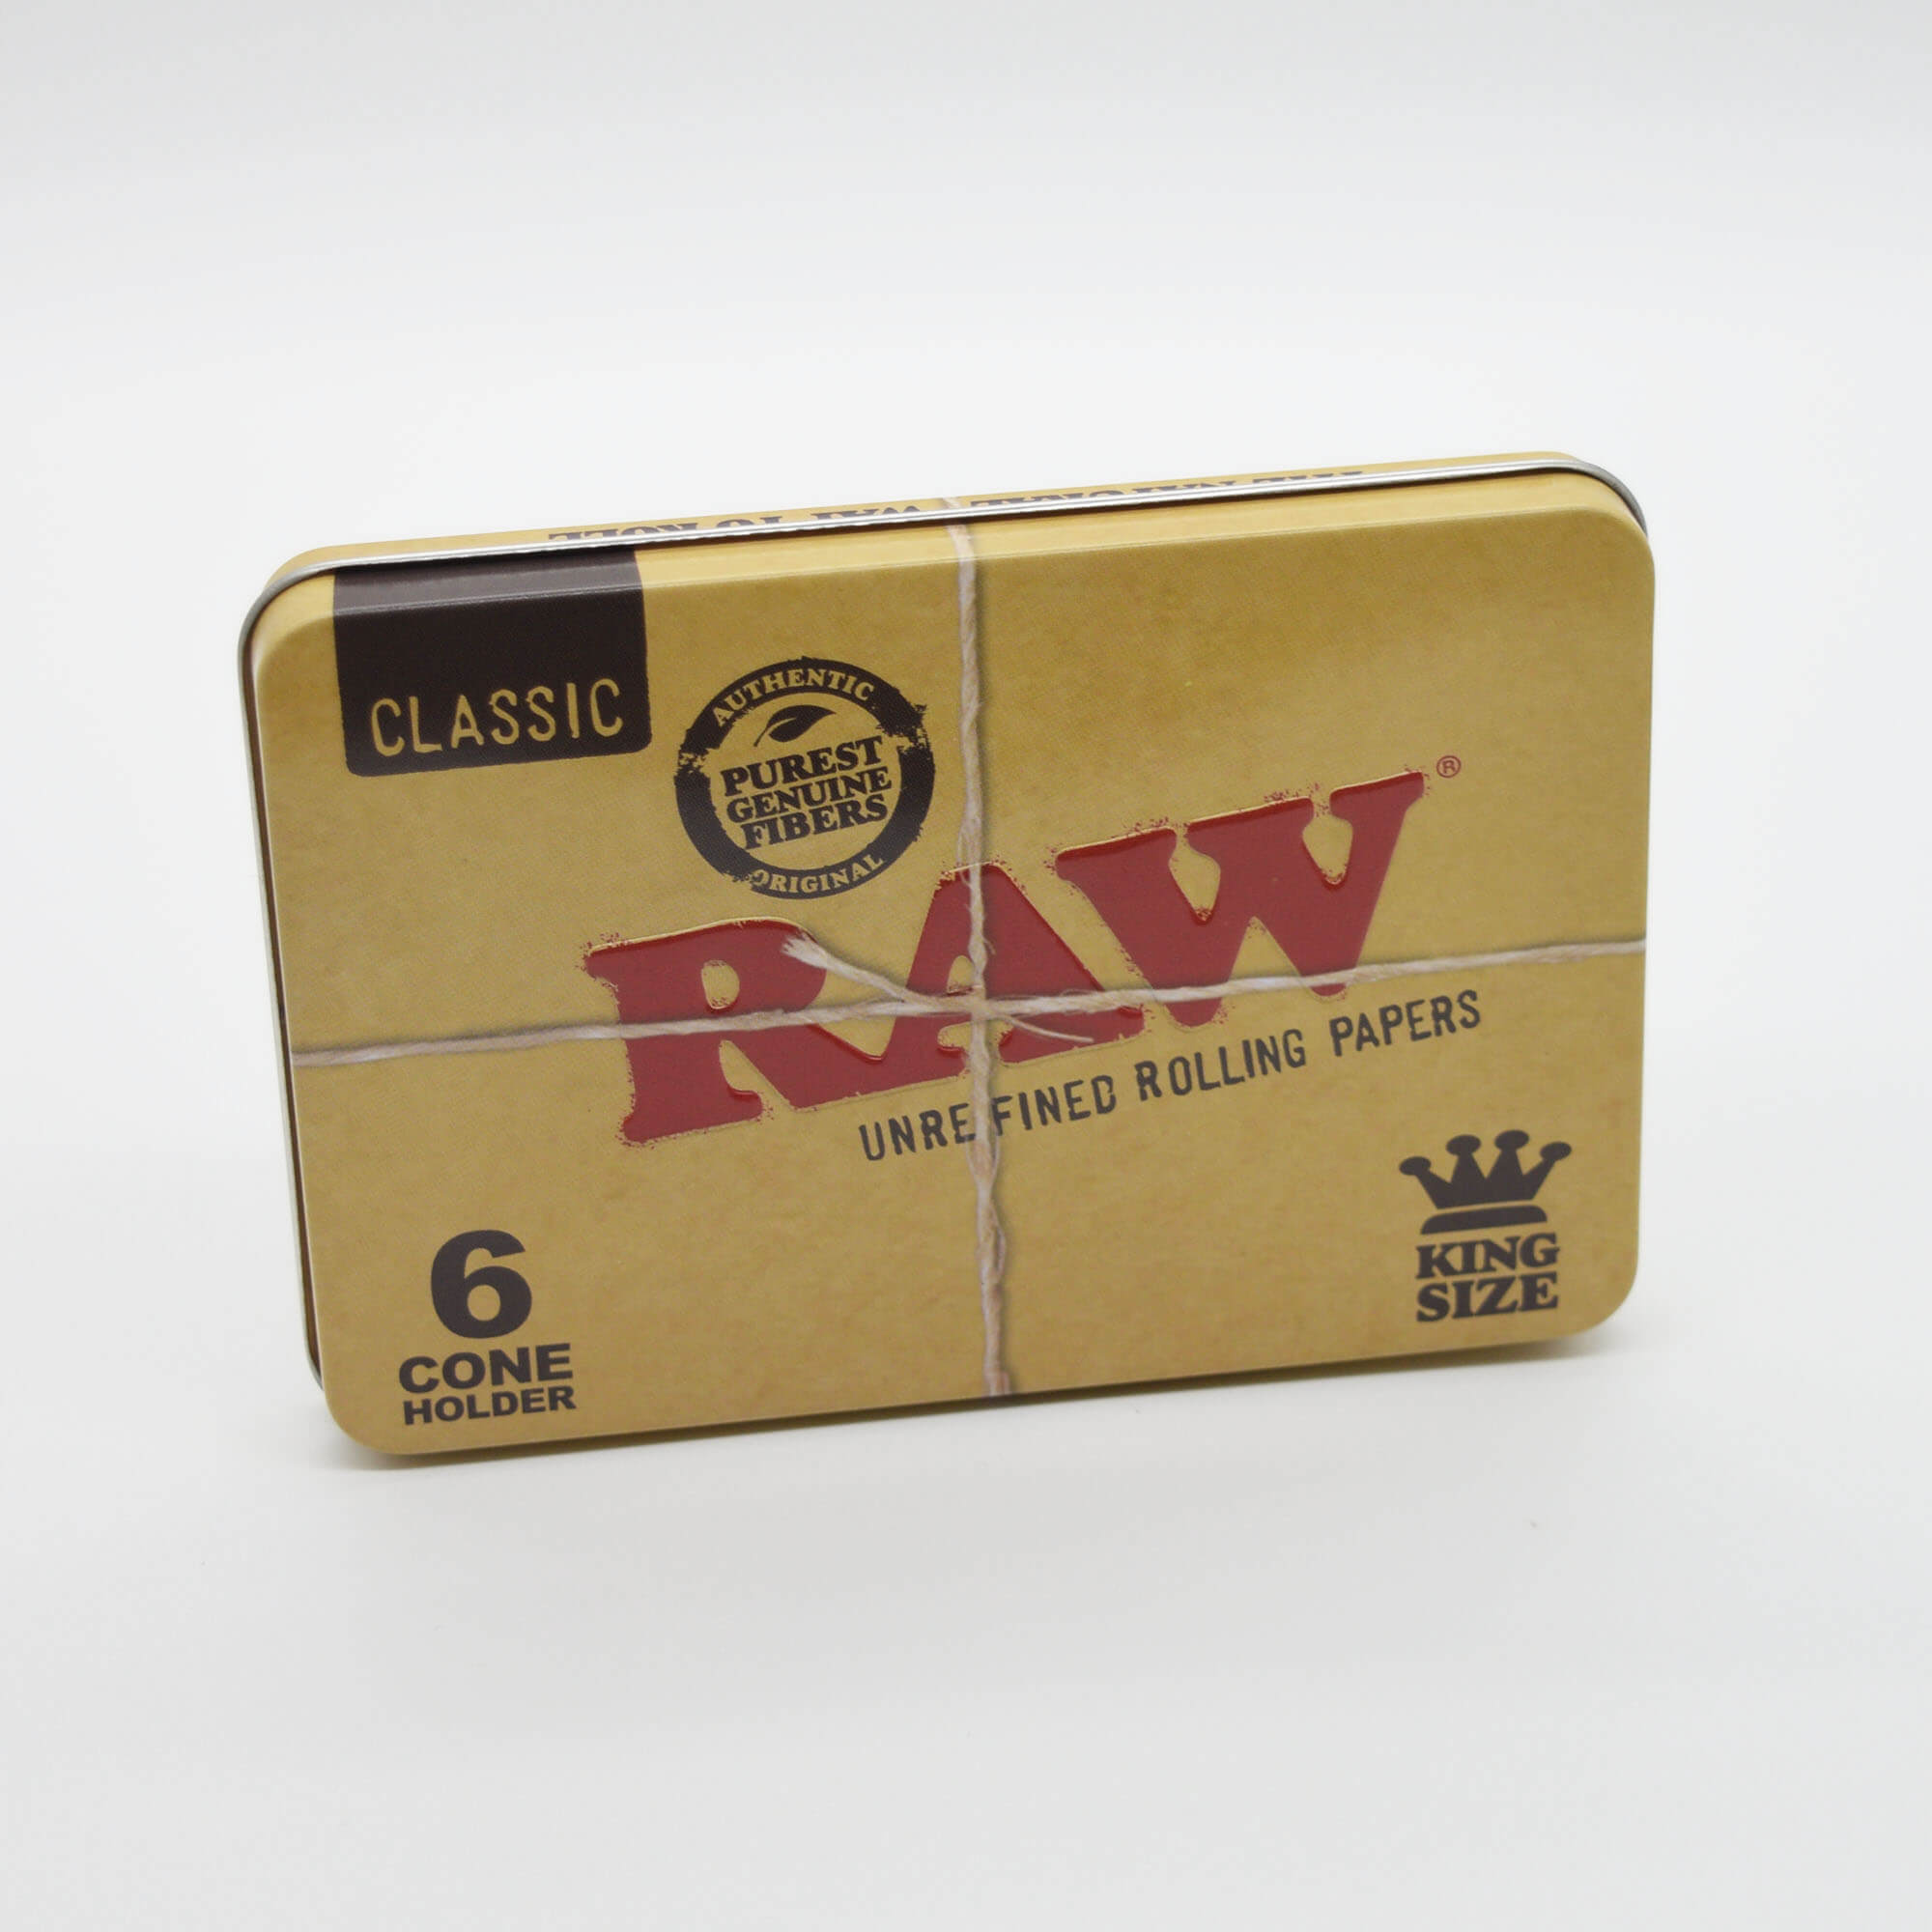 RAW King Size Joint Metalldose / Aufbewahrungsdose - Smokerhontas